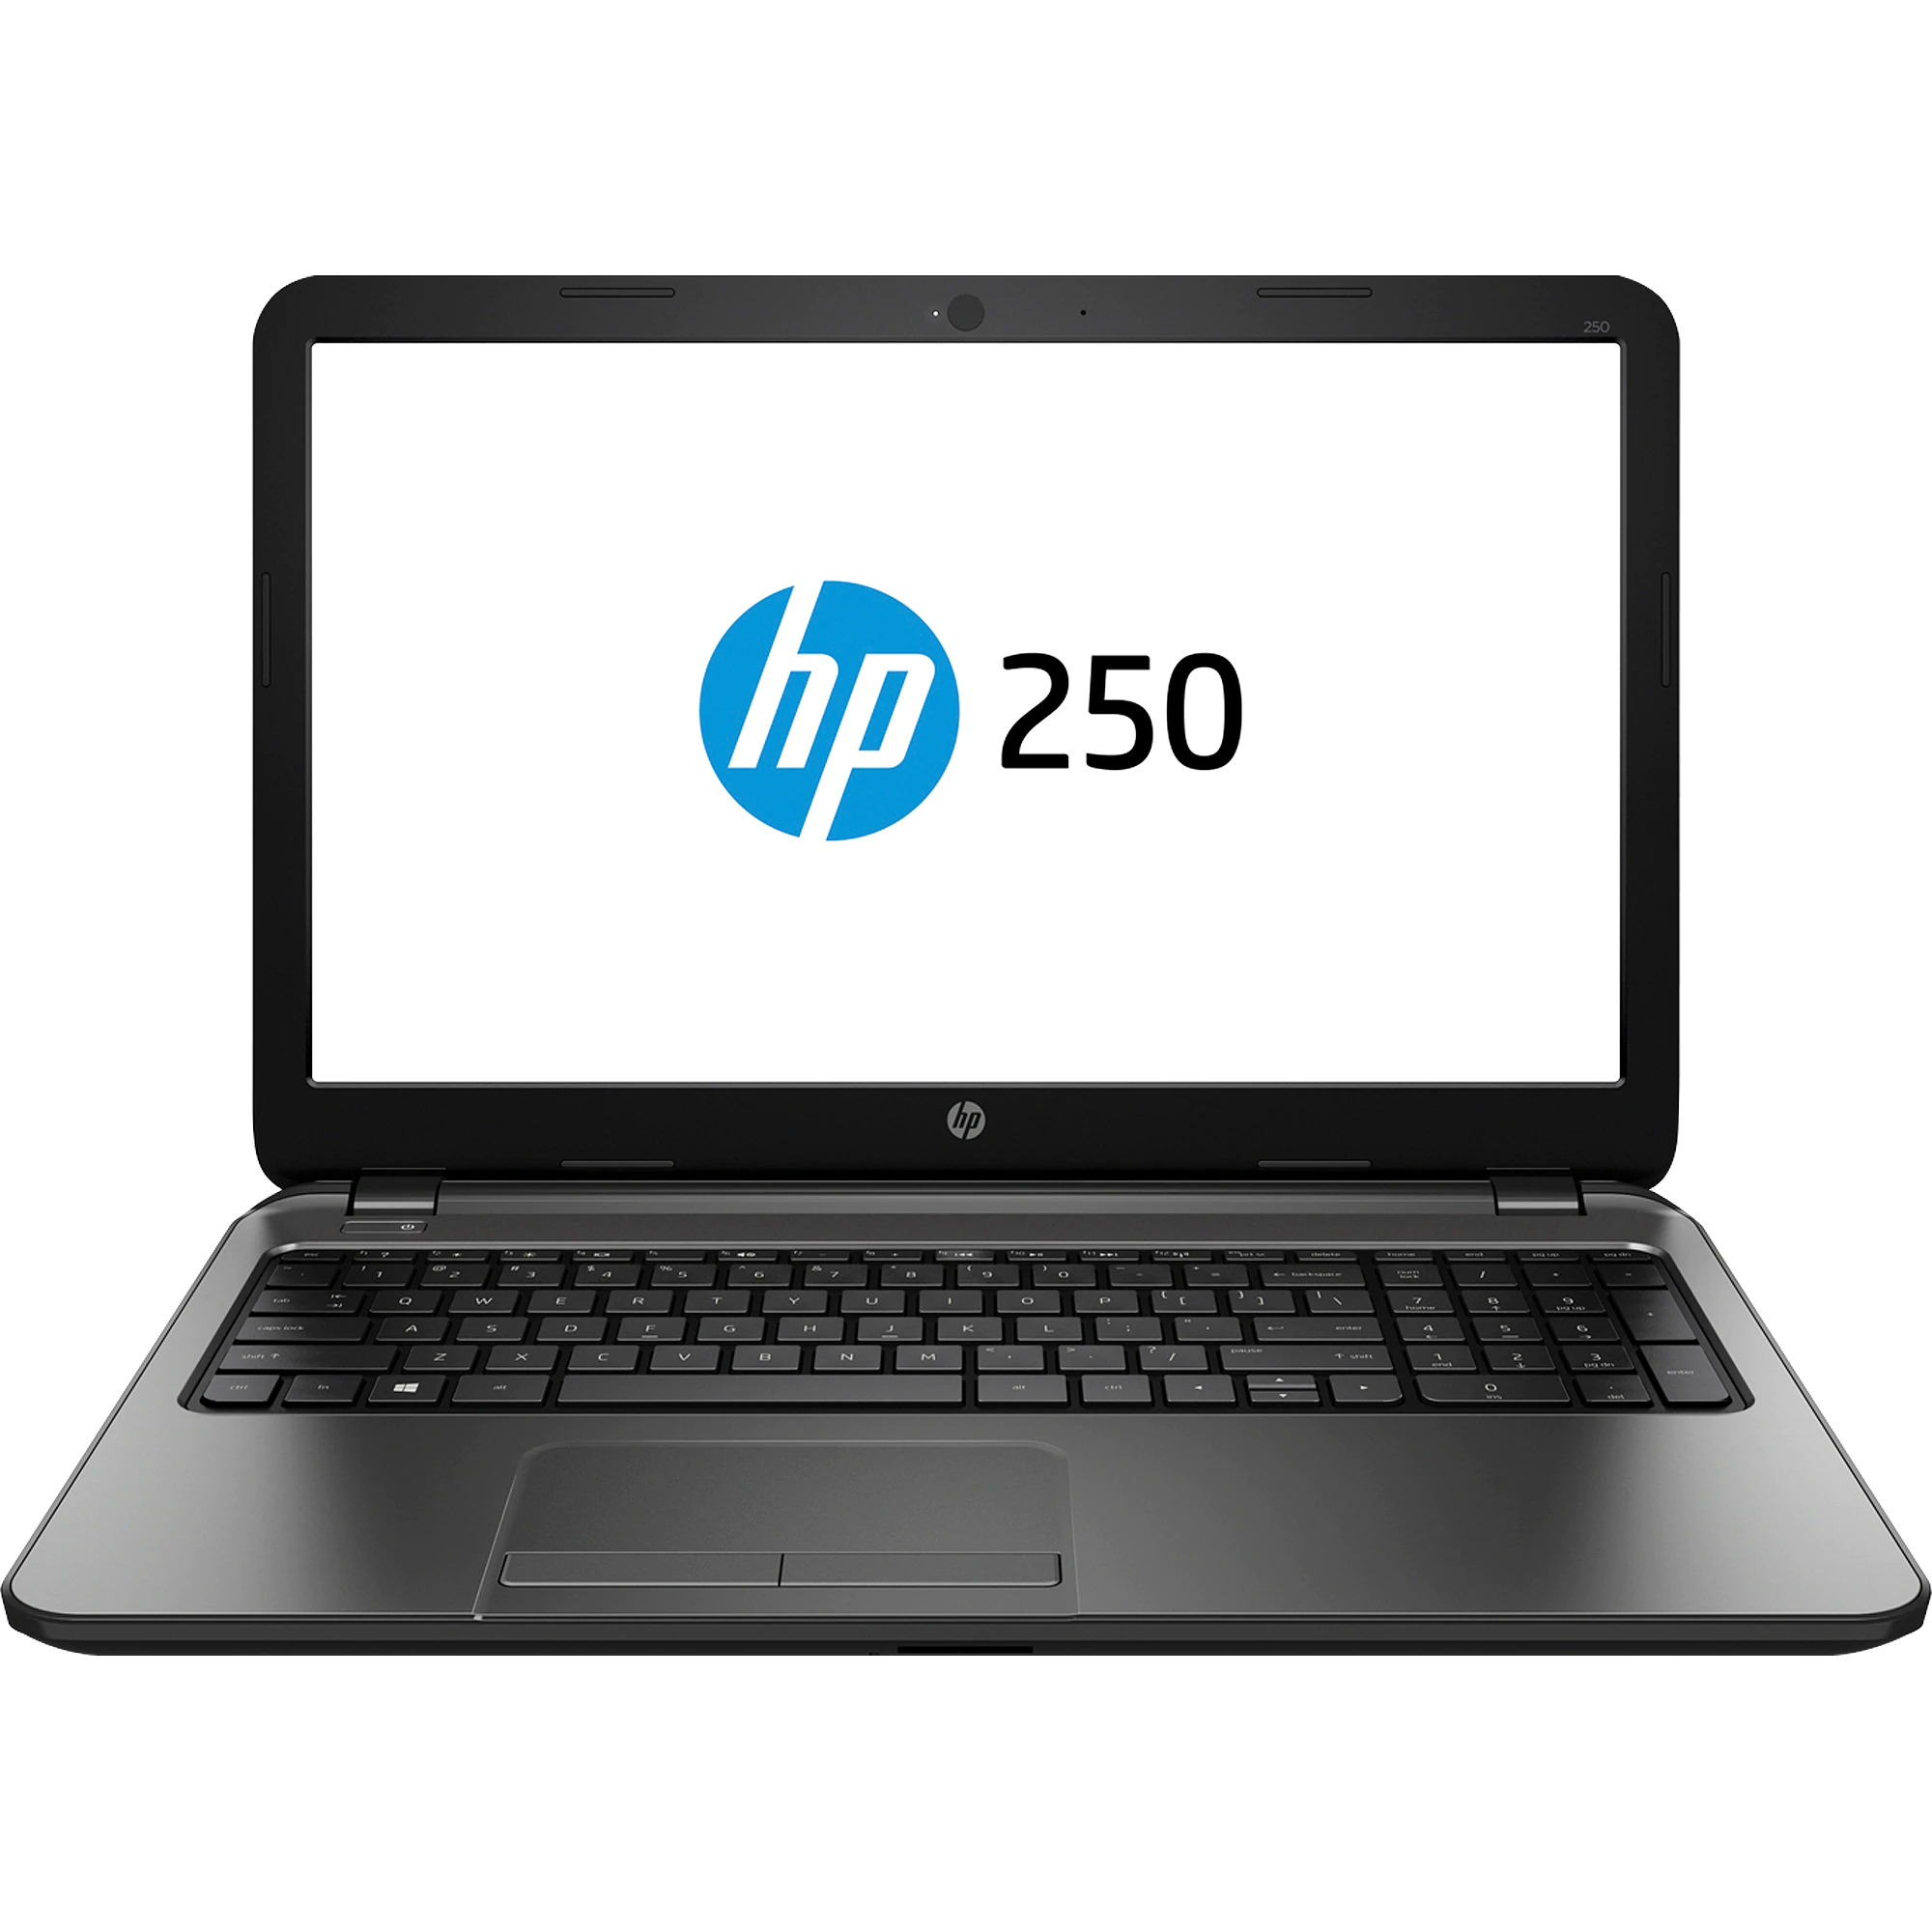 Laptop HP 250 G3, Intel Celeron N2830 2.16GHz, 4GB DDR3, 500GB SATA, DVD-RW, 15.6 Inch, Webcam, Tastatura Numerica